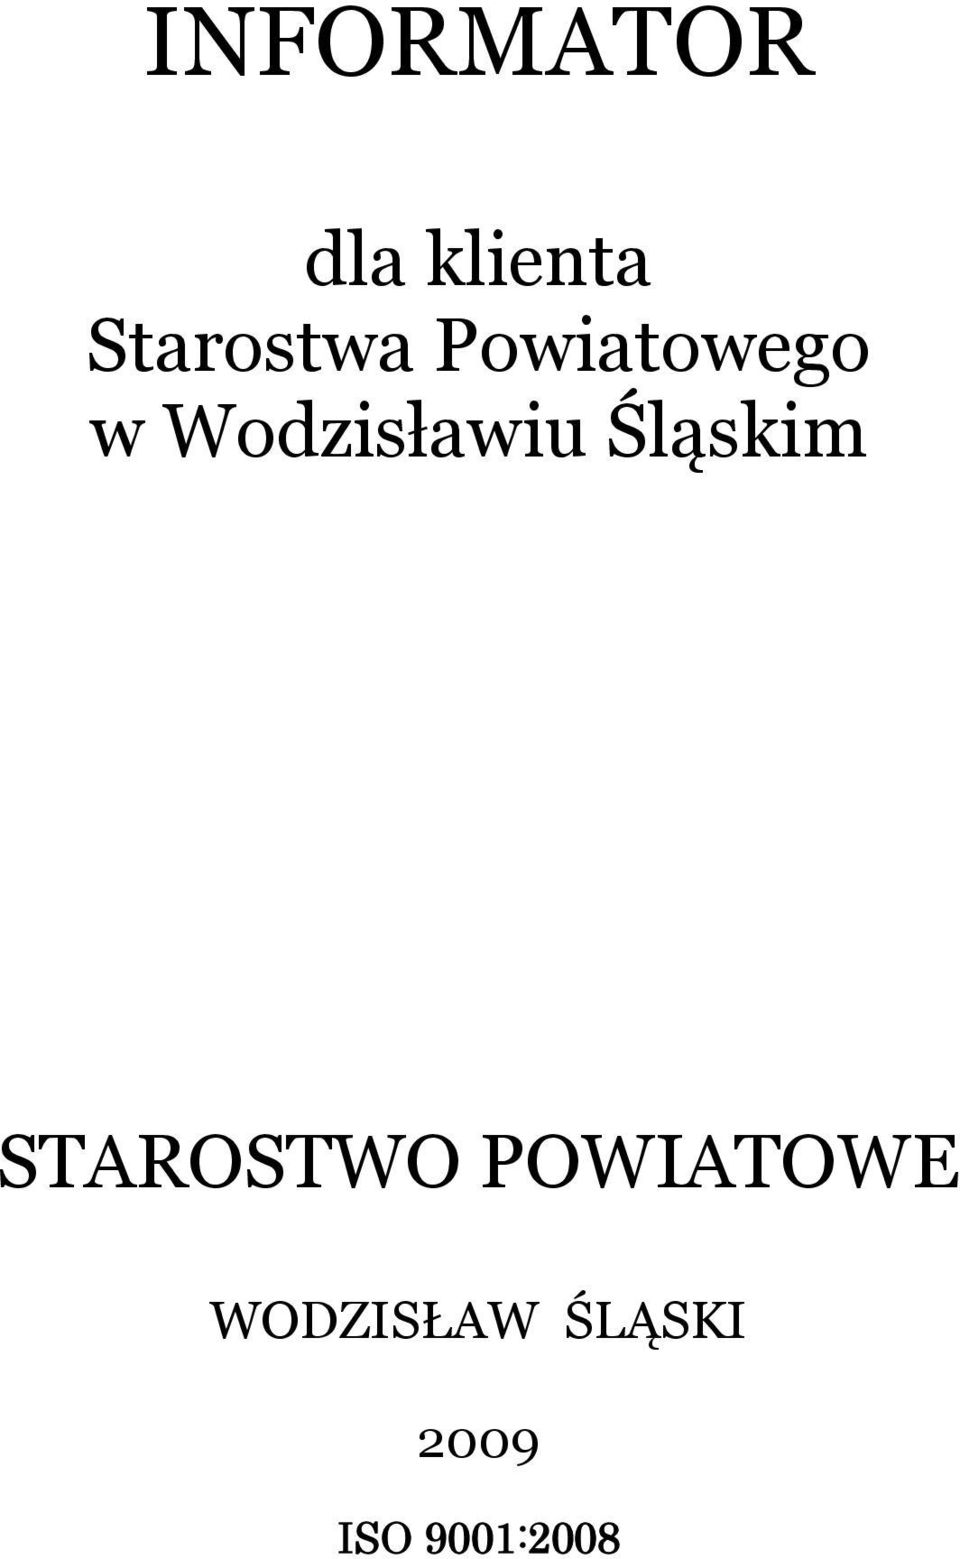 Wodzisławiu Śląskim STAROSTWO